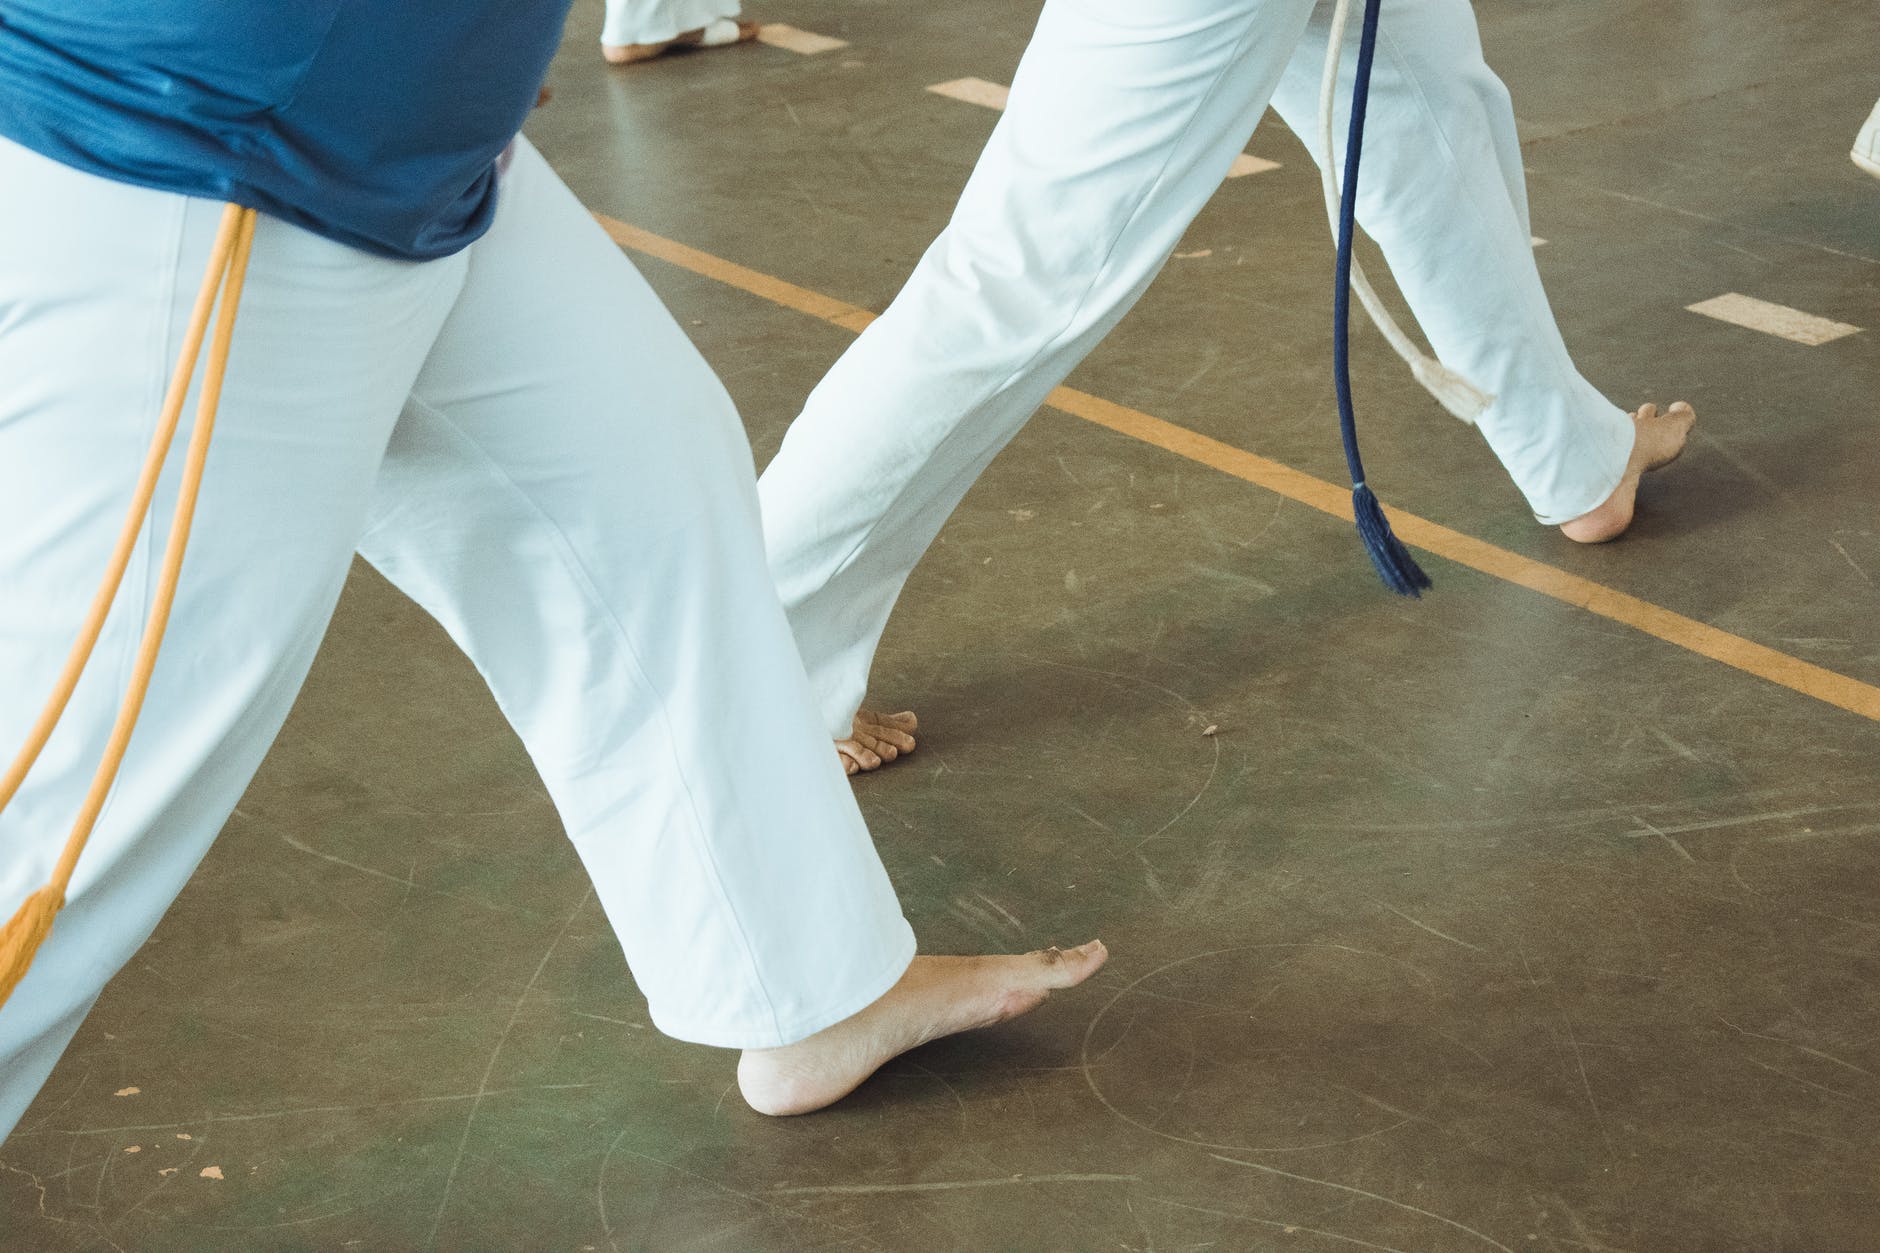 É possível contar com várias academias e centros de treinamento especializados em artes marciais em Goiânia